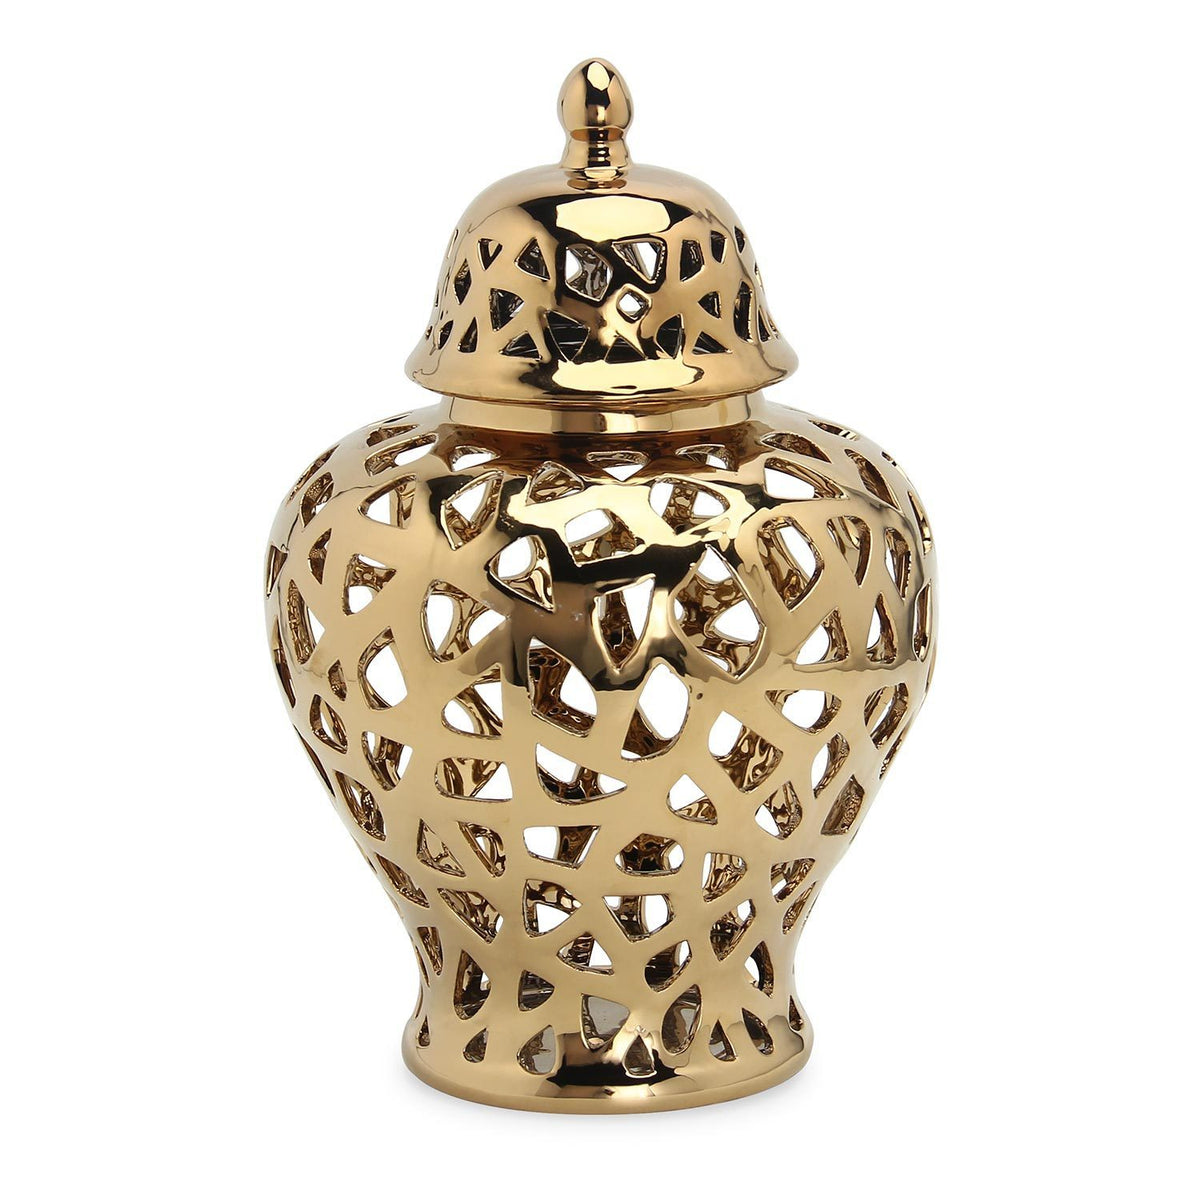 Gold Ceramic Ginger Jar Vase with Decorative Design